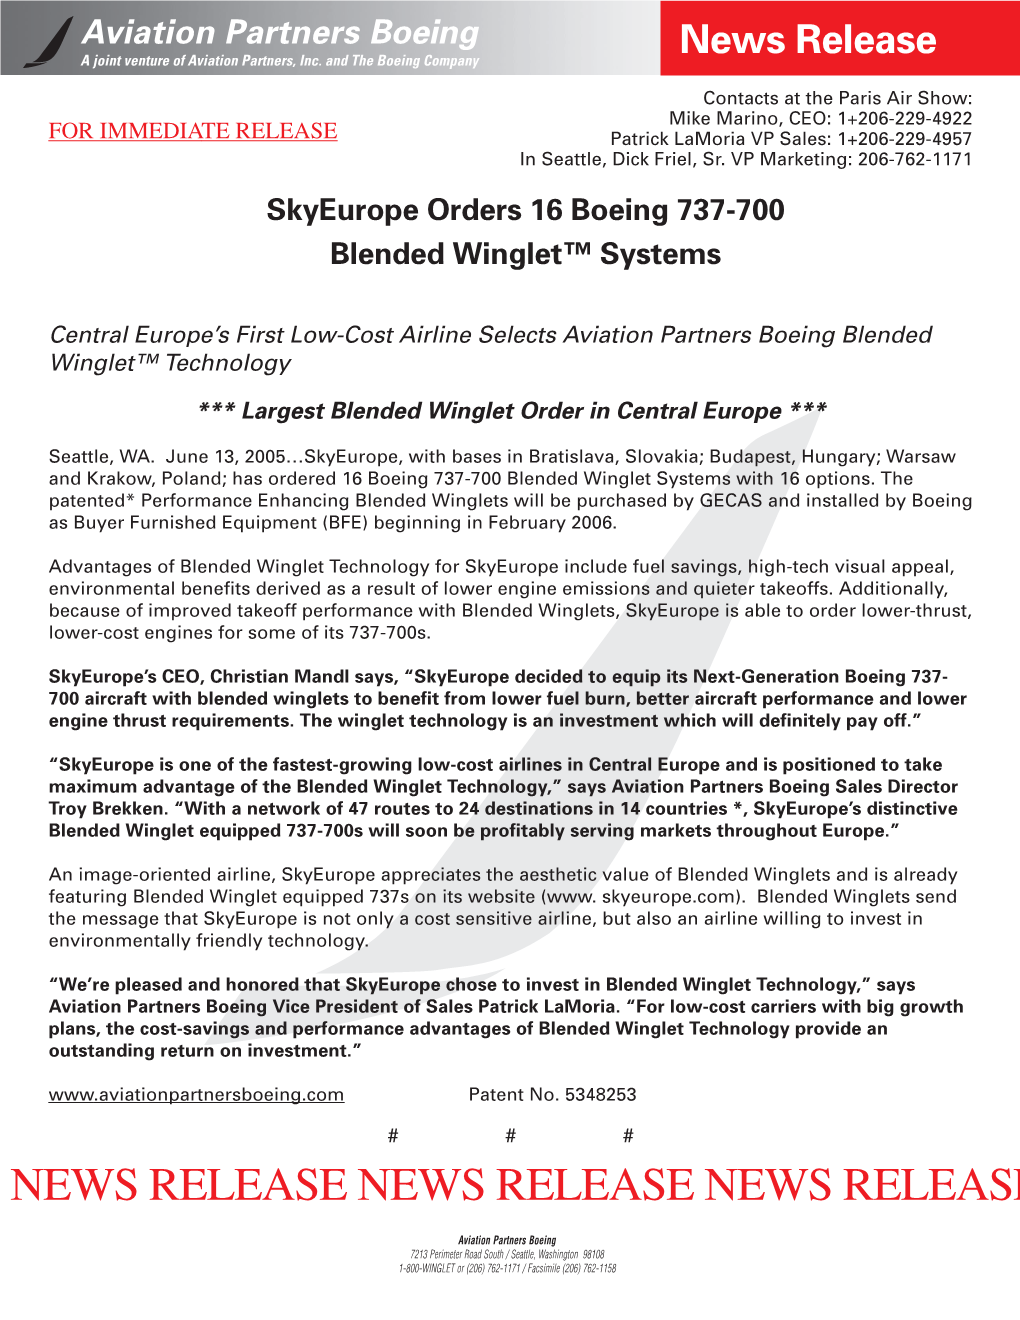 June 13, 2005 Skyeurope Orders 16 Boeing